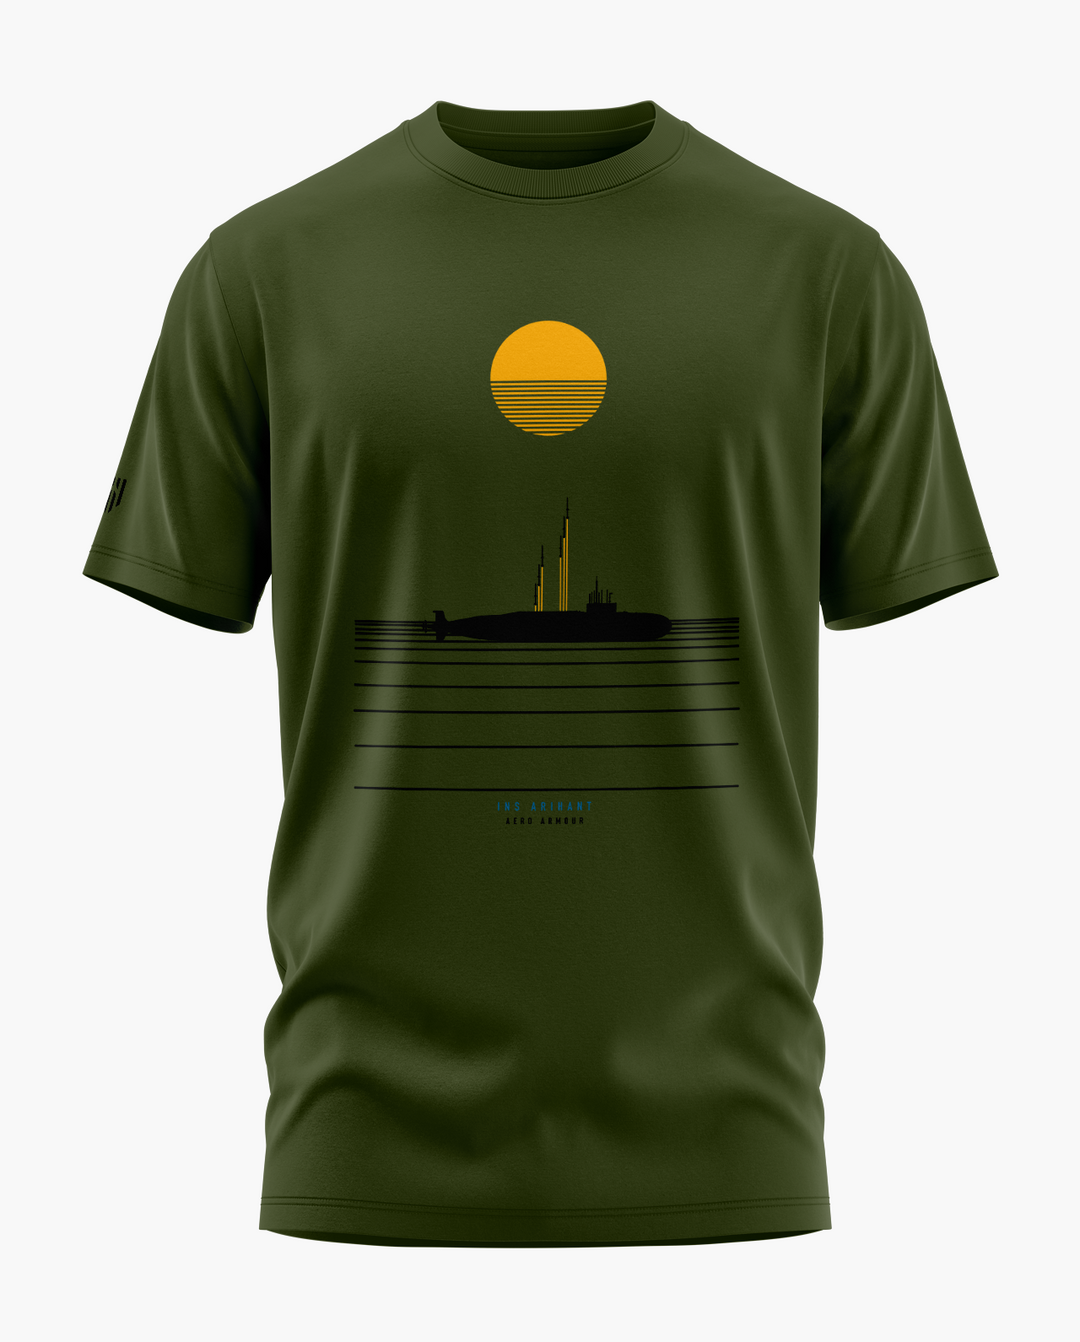 INS Arihant Horizon T-Shirt